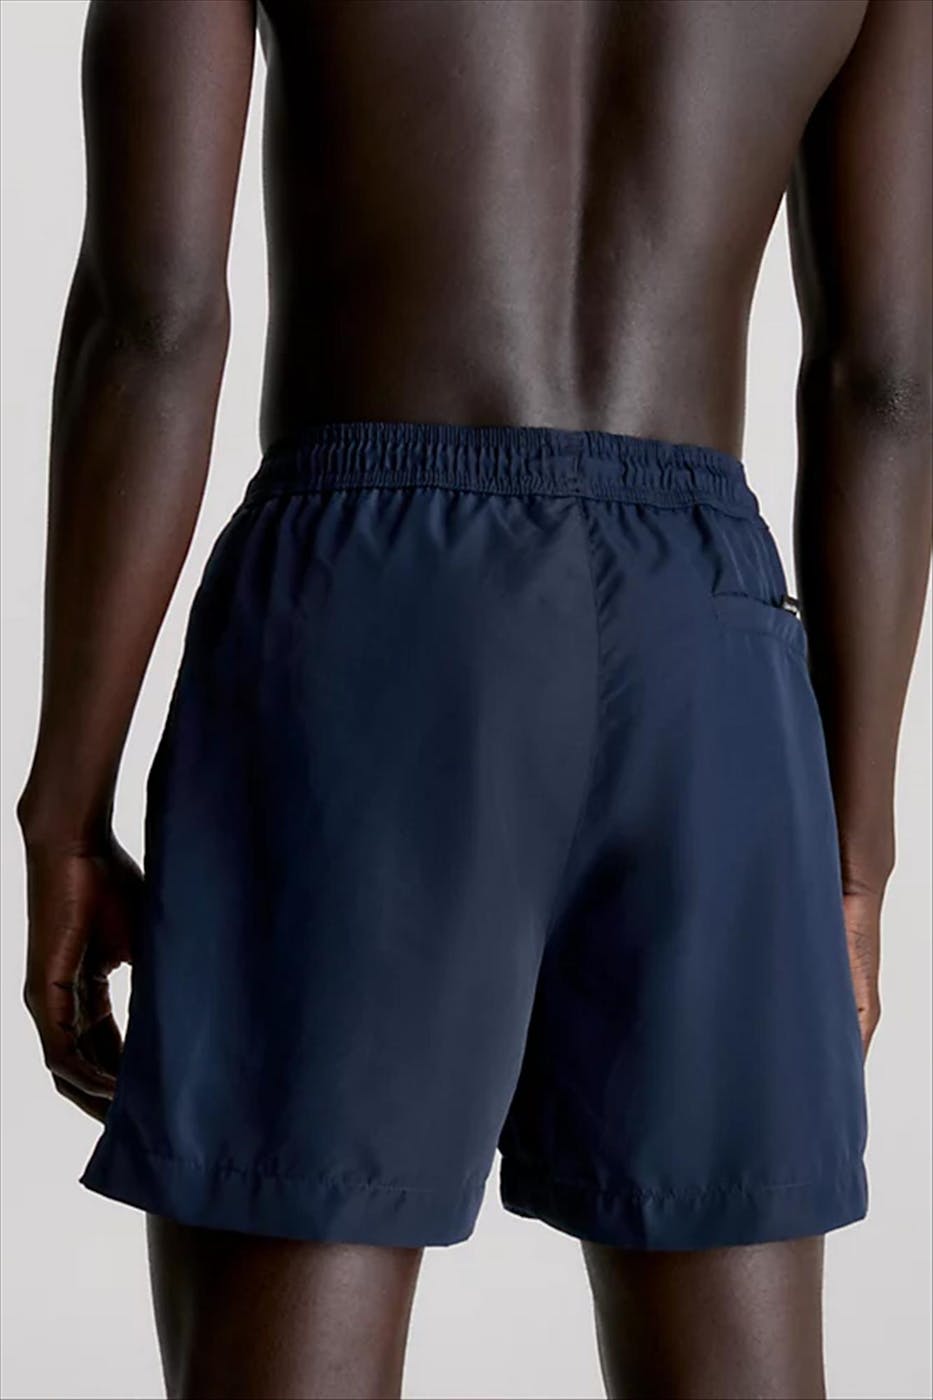 Calvin Klein Underwear - Donkerblauwe Core Logo zwemshort